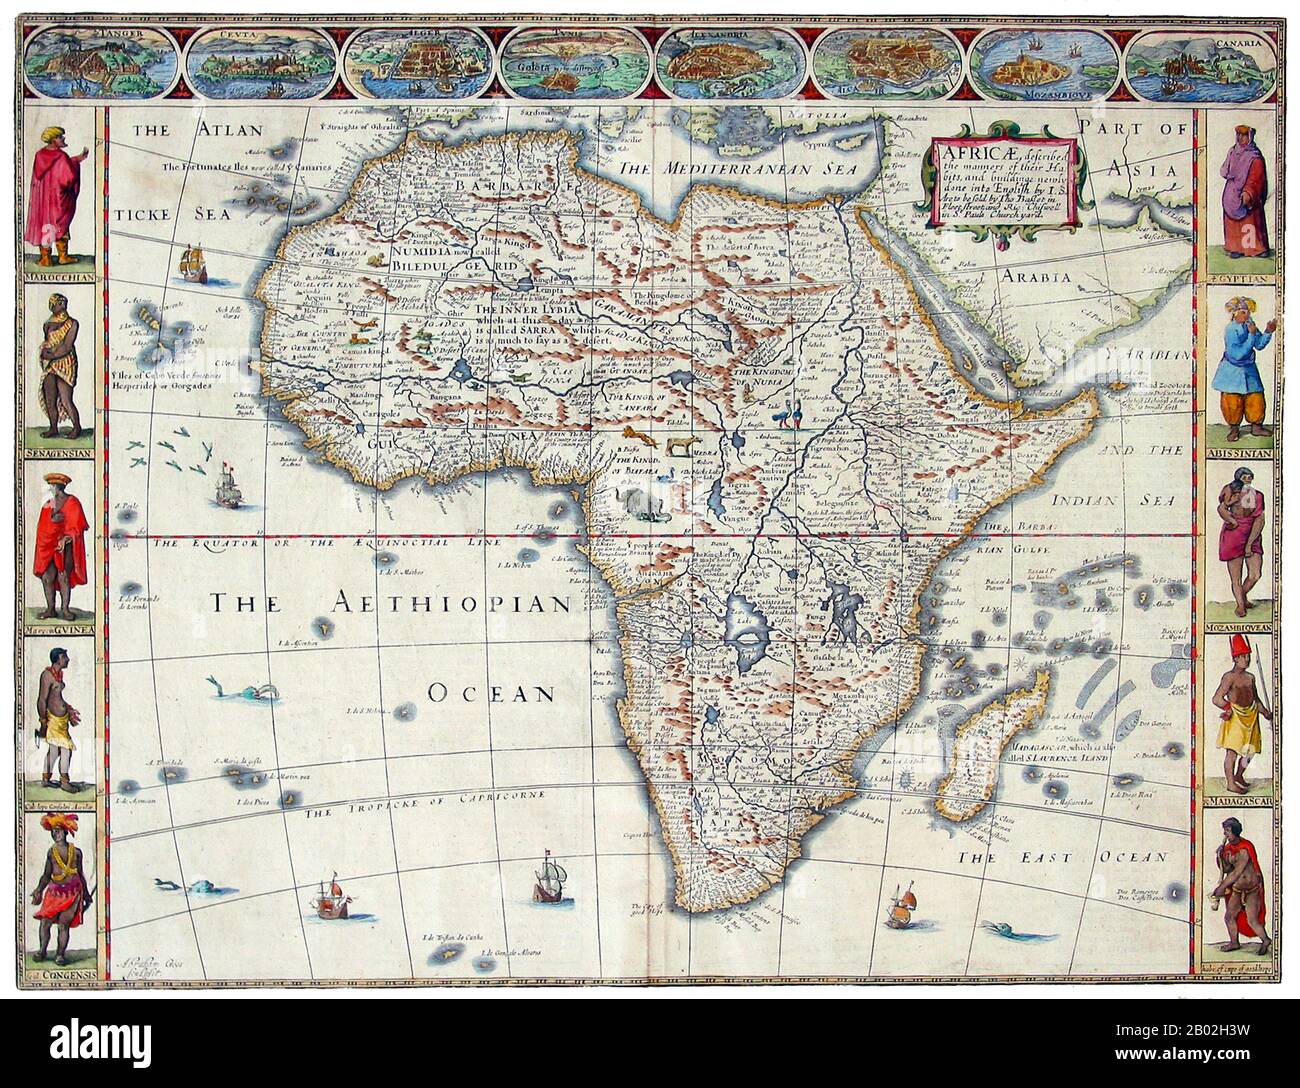 Dies ist die älteste englische Sprachkarte Afrikas. Diese Karte ist Teil des ersten Generalatlas der Welt, der in England produziert wurde. Diese berühmte Karte stammt von John Speed's Prospect of the World, dem ersten Generalatlas, der 1626 in Großbritannien produziert und 1627 von Humble und dann in den nachfolgenden Ausgaben bis 1676 erstmals veröffentlicht wurde. Diese Karte stammt aus der Ausgabe von 1676. Stockfoto